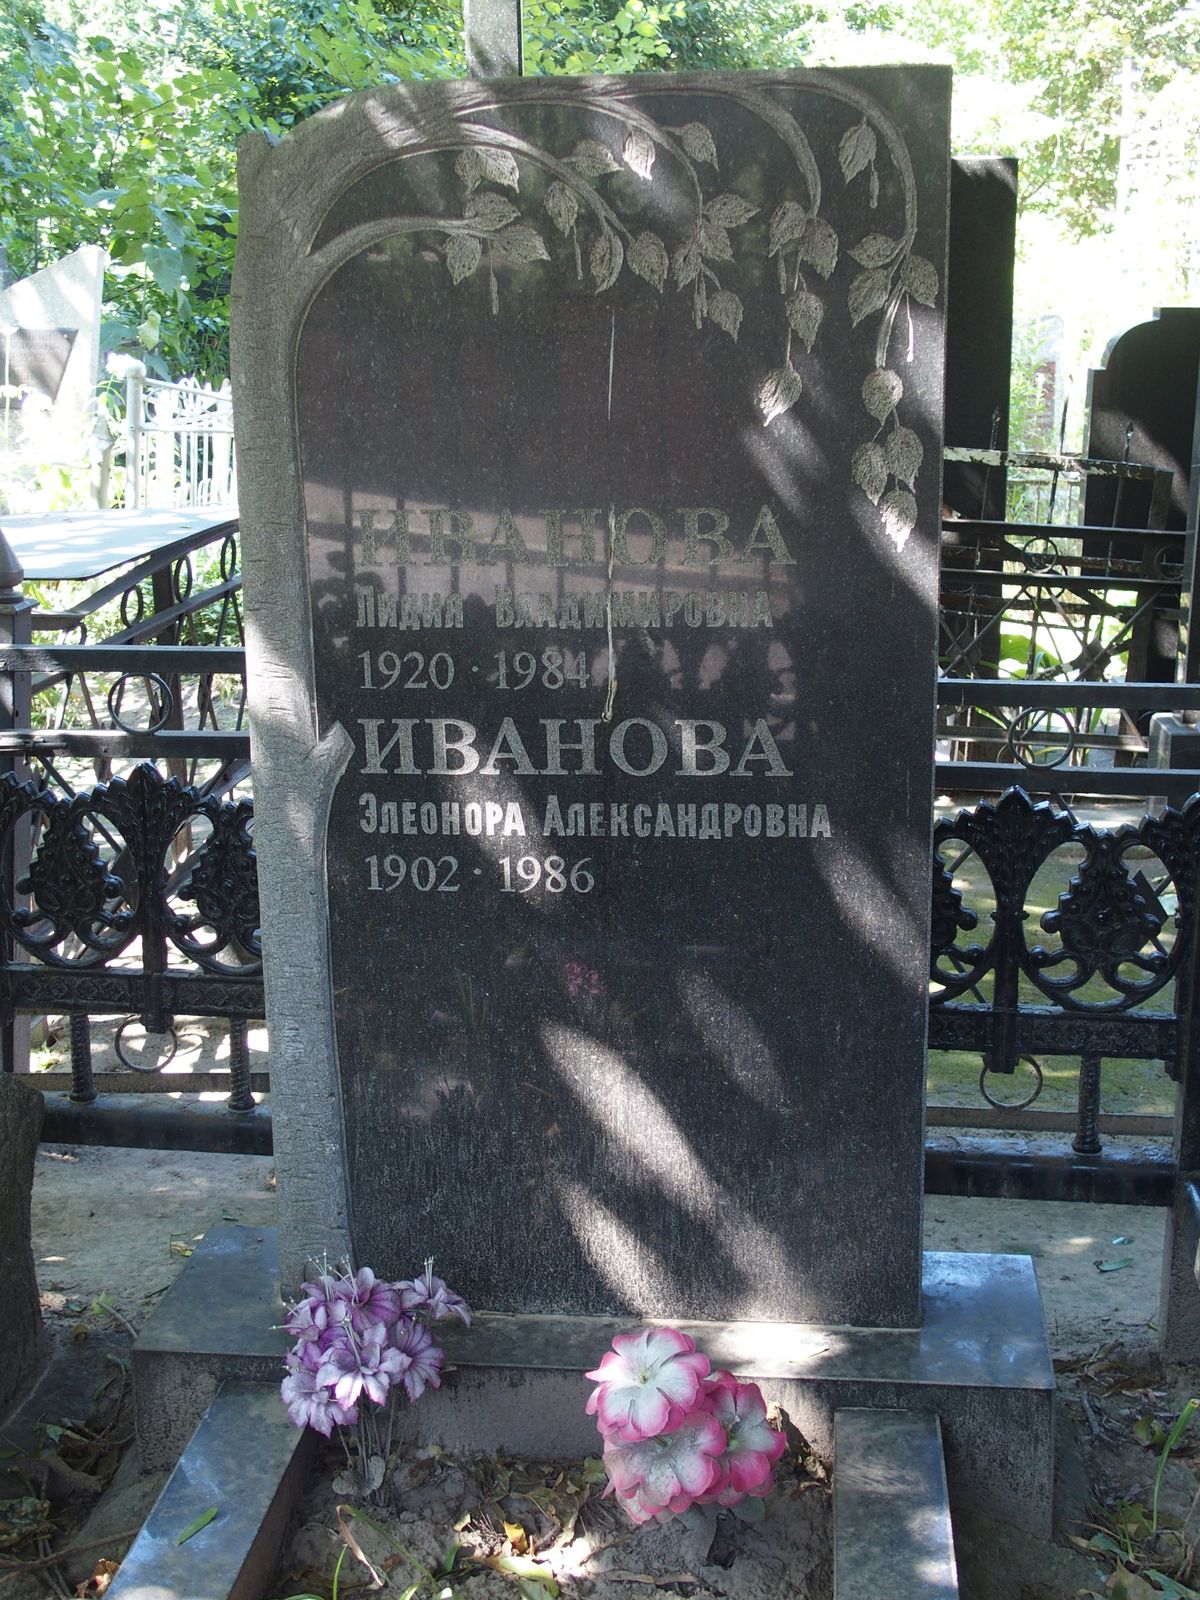 Inscription from the tombstone of Lidia Vladimirovna Ivanova, Ěleonora Aleksandrovna Ivanova